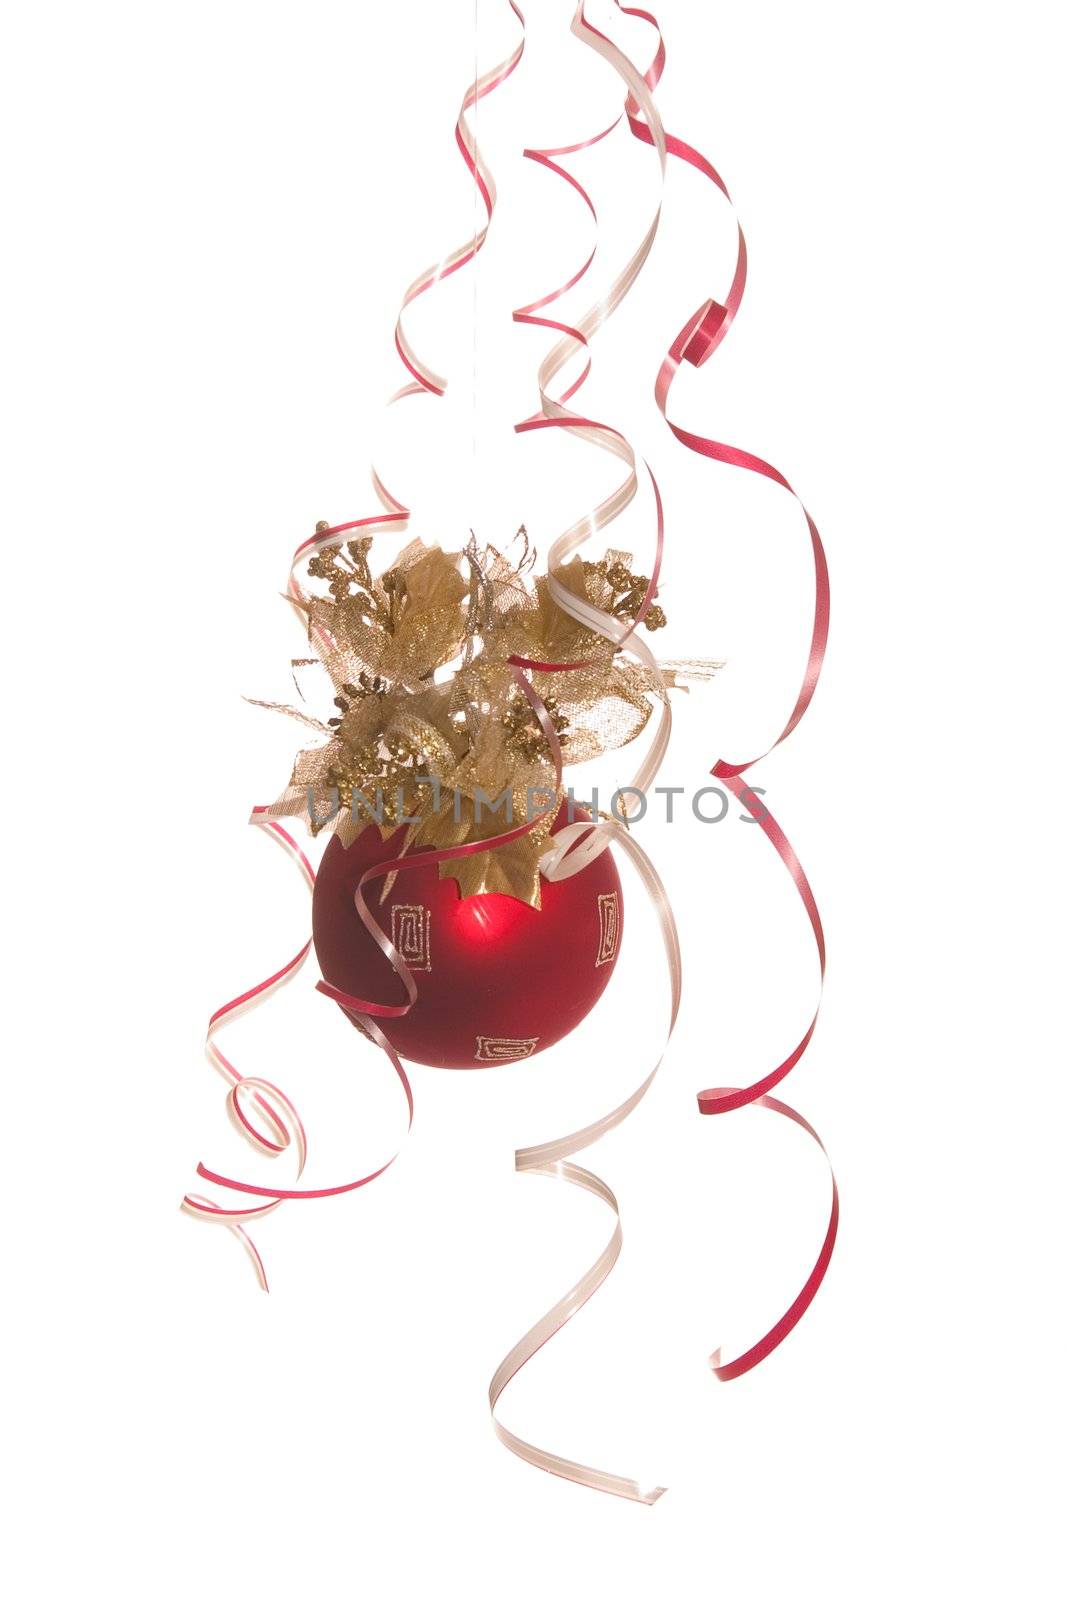 dark red fir-tree new-year ball by Serp